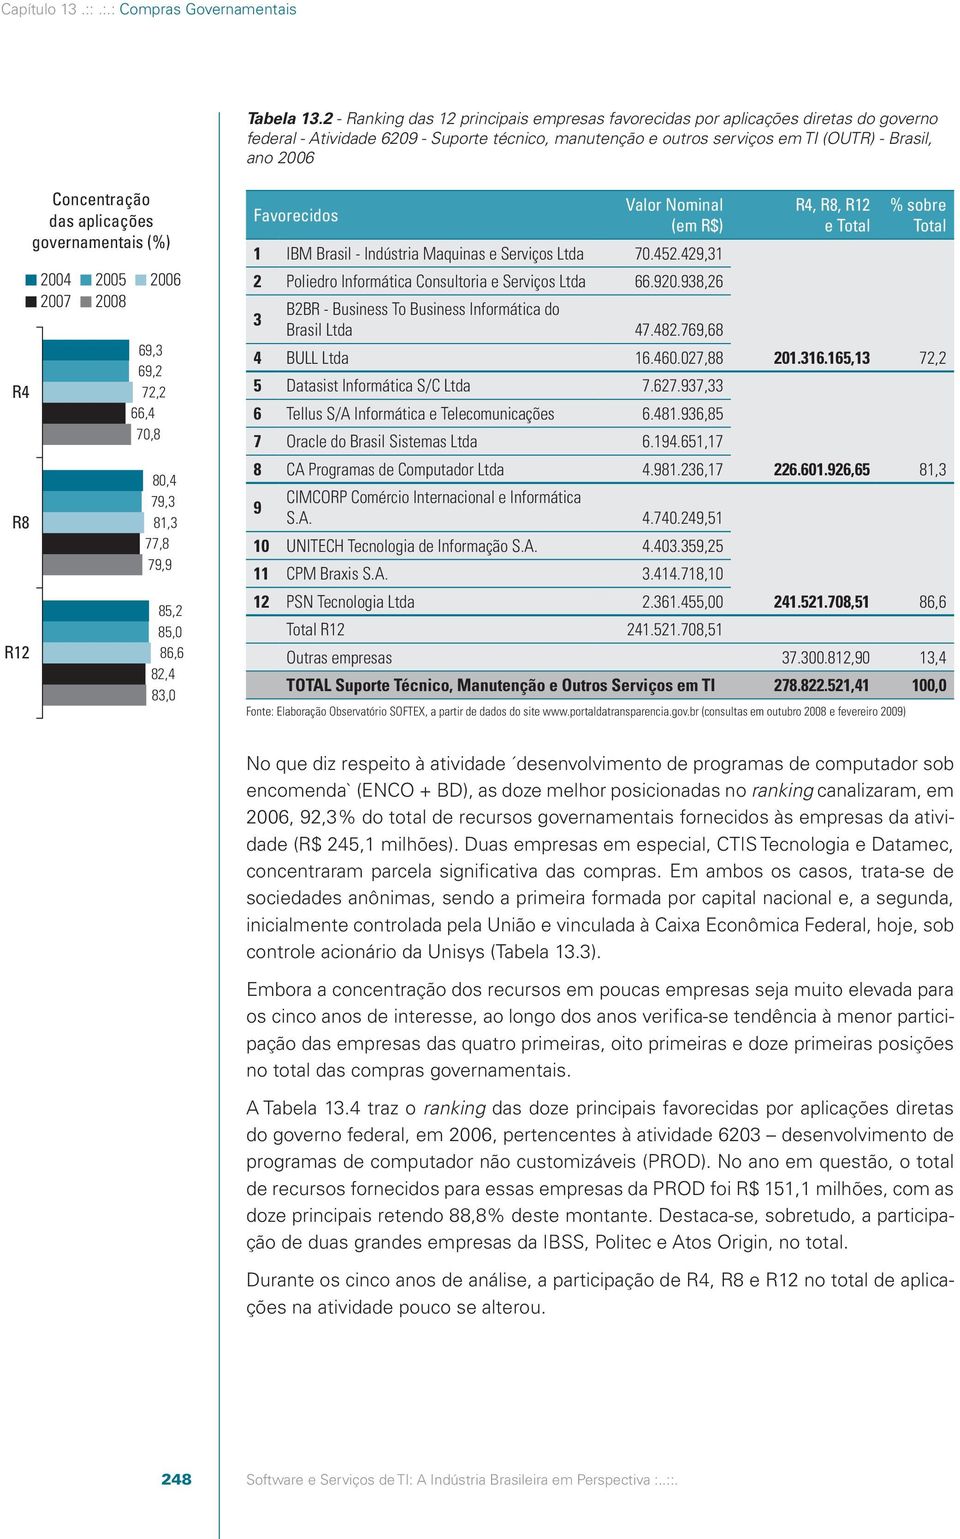 Concentração das aplicações governamentais (%) 2004 2005 2007 2008 2006 69,3 69,2 72,2 66,4 70,8 80,4 79,3 81,3 77,8 79,9 85,2 85,0 86,6 82,4 83,0 Valor Nominal (em R$) 1 IBM Brasil - Indústria